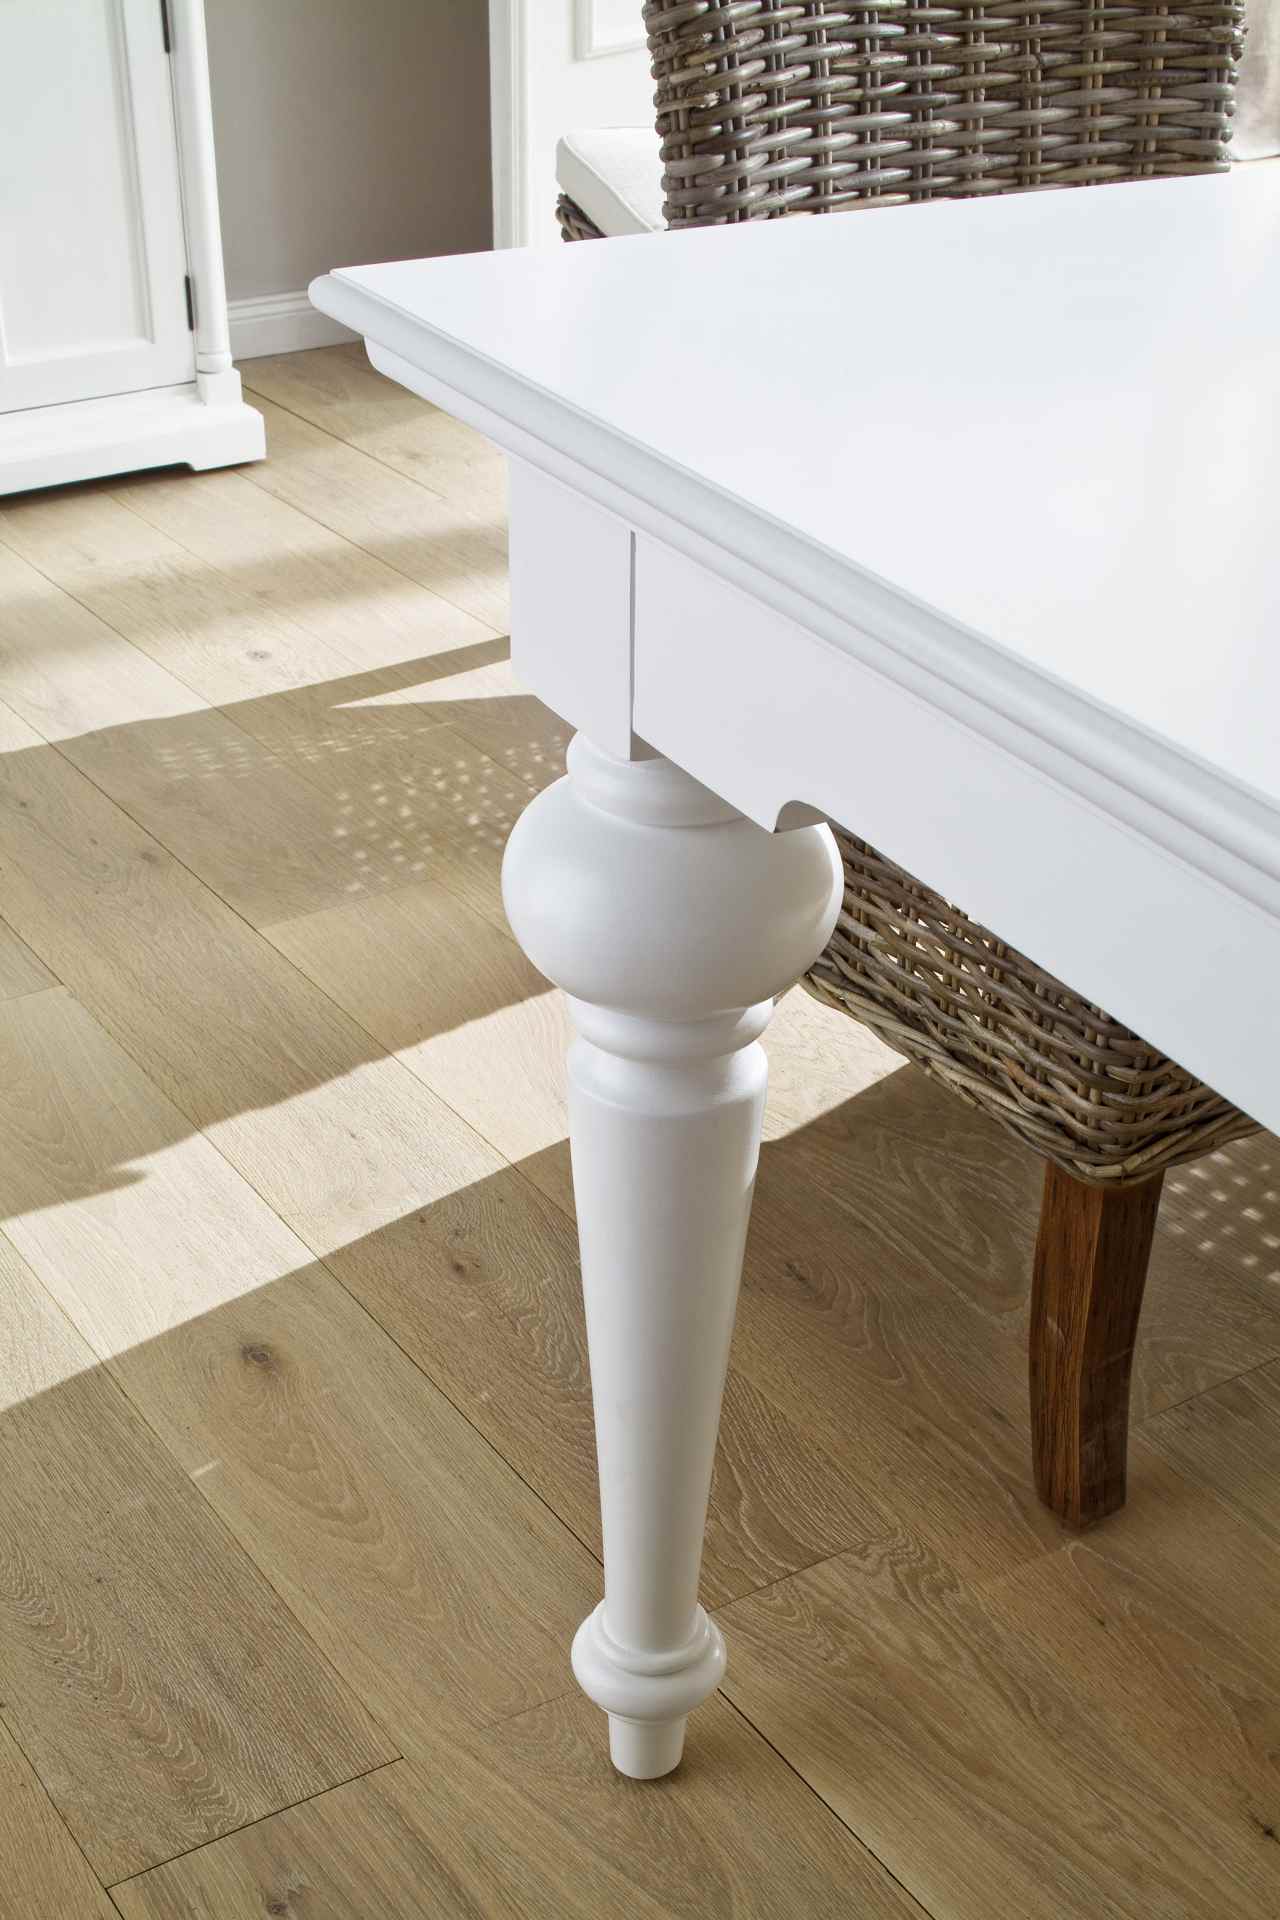 Der Esstisch Provence überzeugt mit seinem Landhaus Stil. Gefertigt wurde er aus Mahagoni Holz, welches einen weißen Farbton besitzt. Der Esstisch verfügt über eine rechteckige Form. Die Breite beträgt 180 cm.